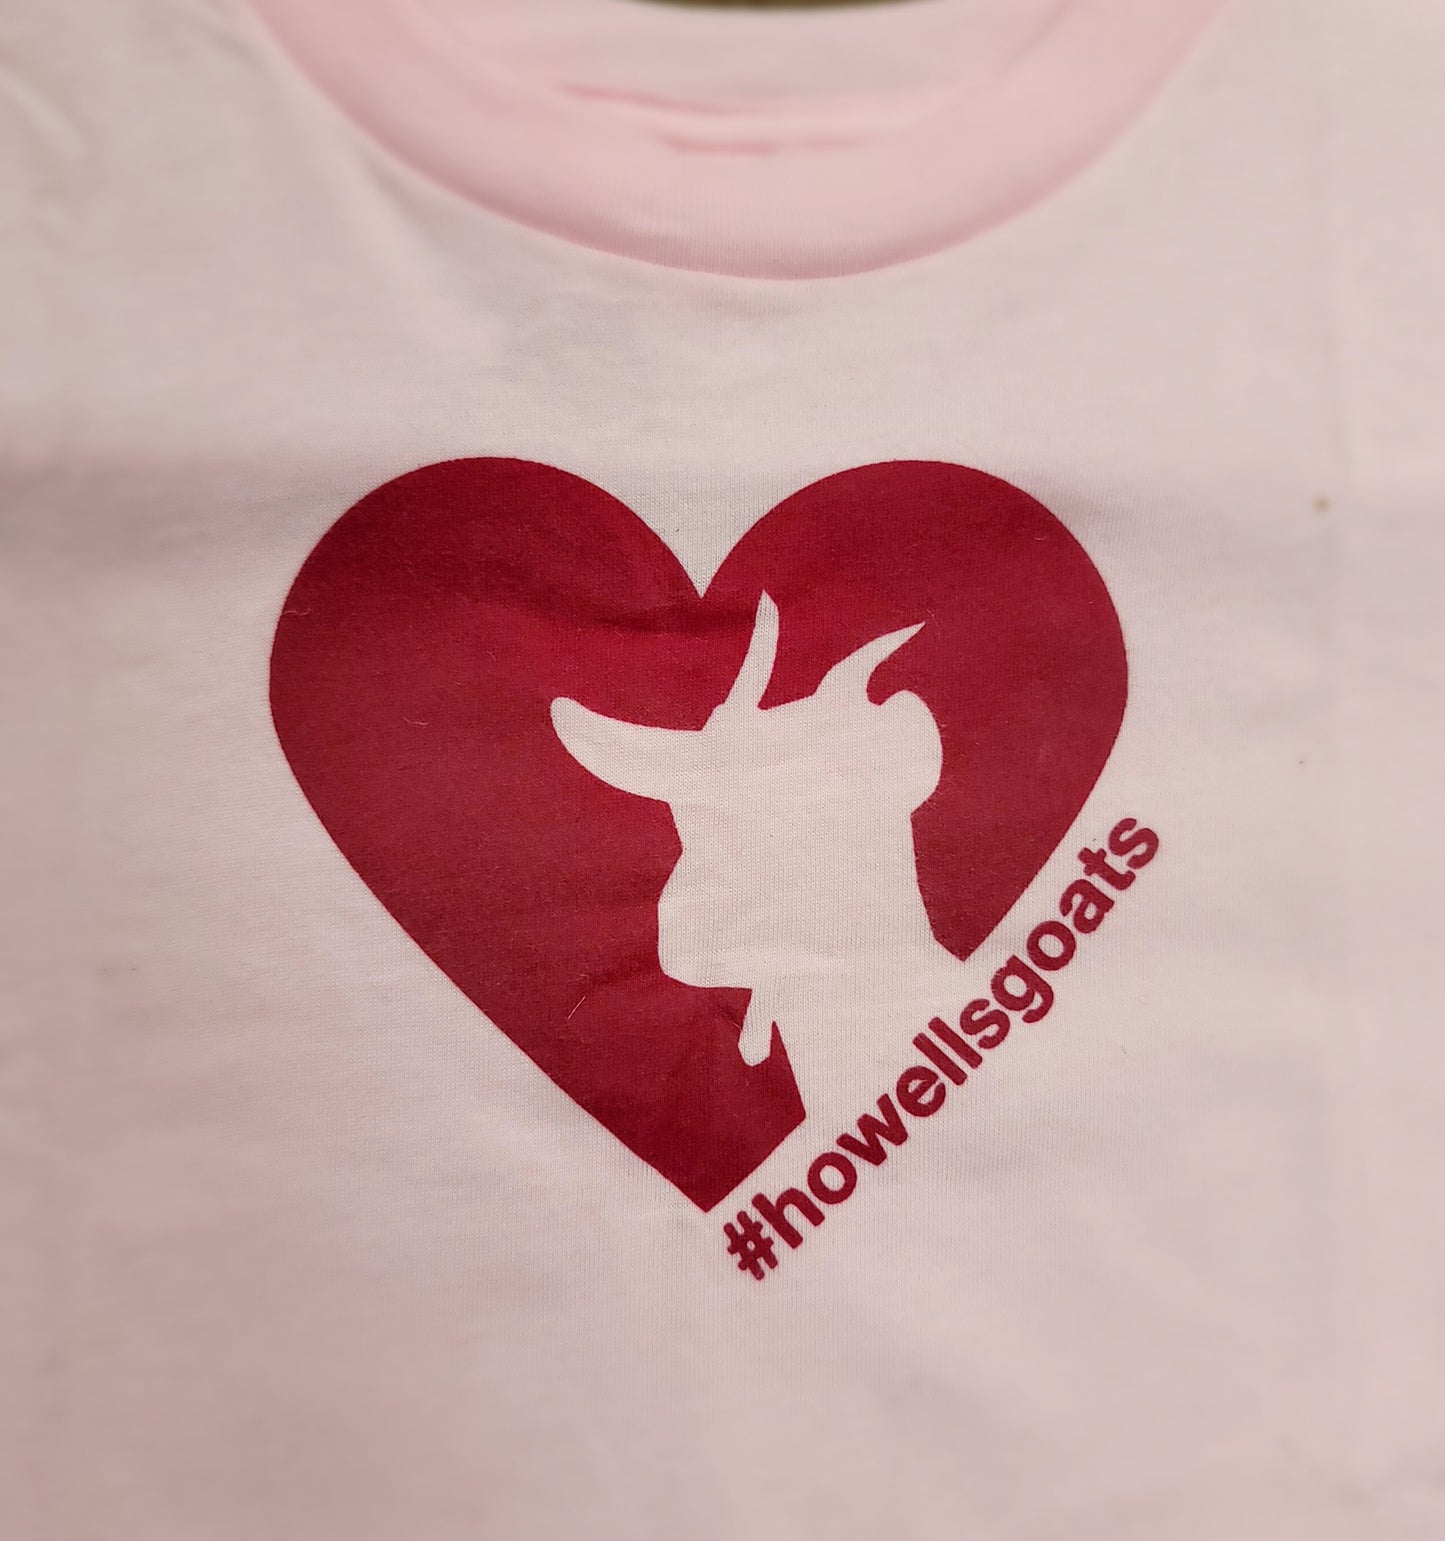 Howells Goat T-shirts